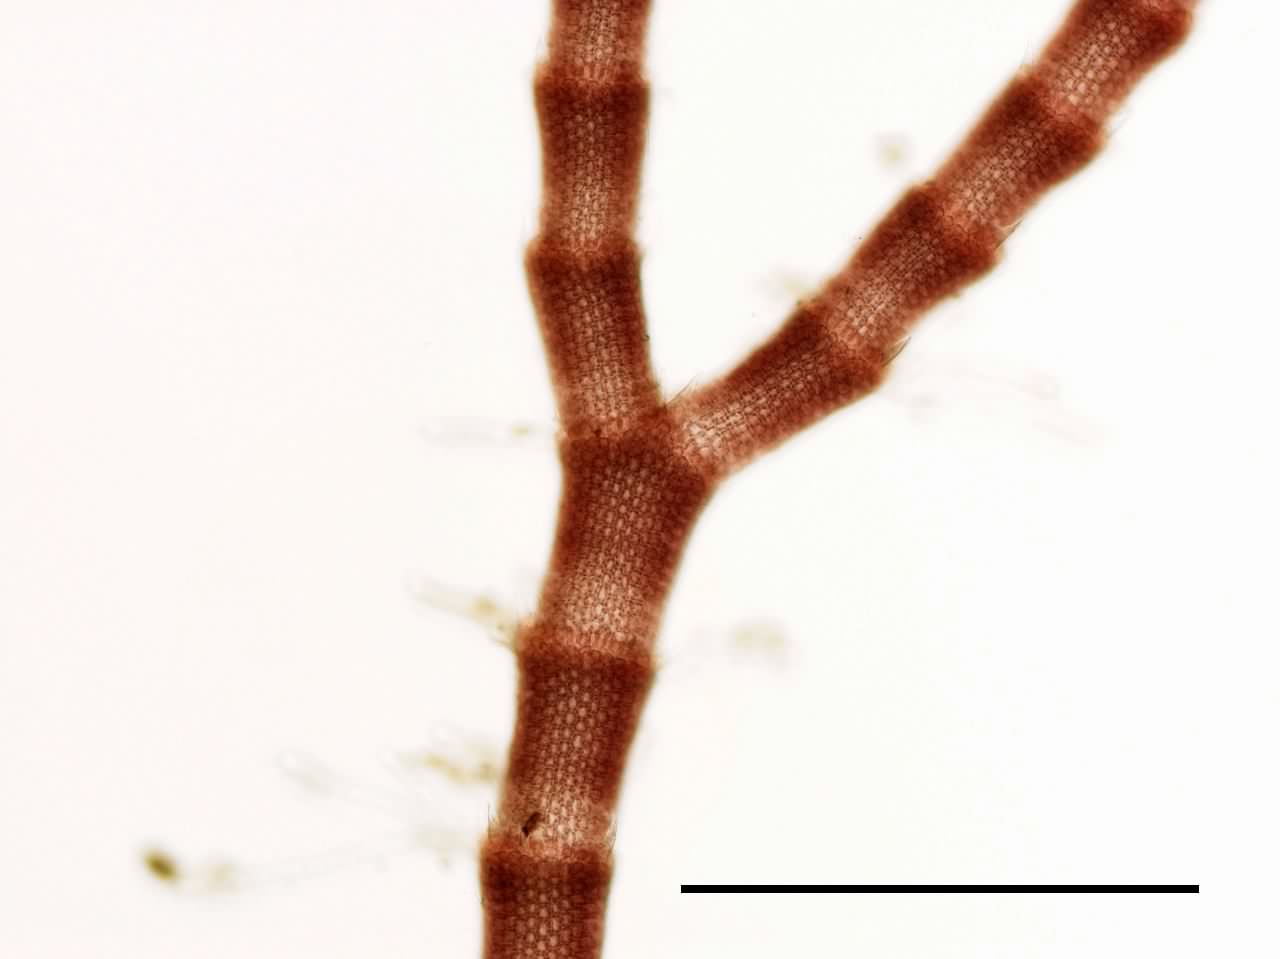 トゲイギス （Centroceras sp.）の画像